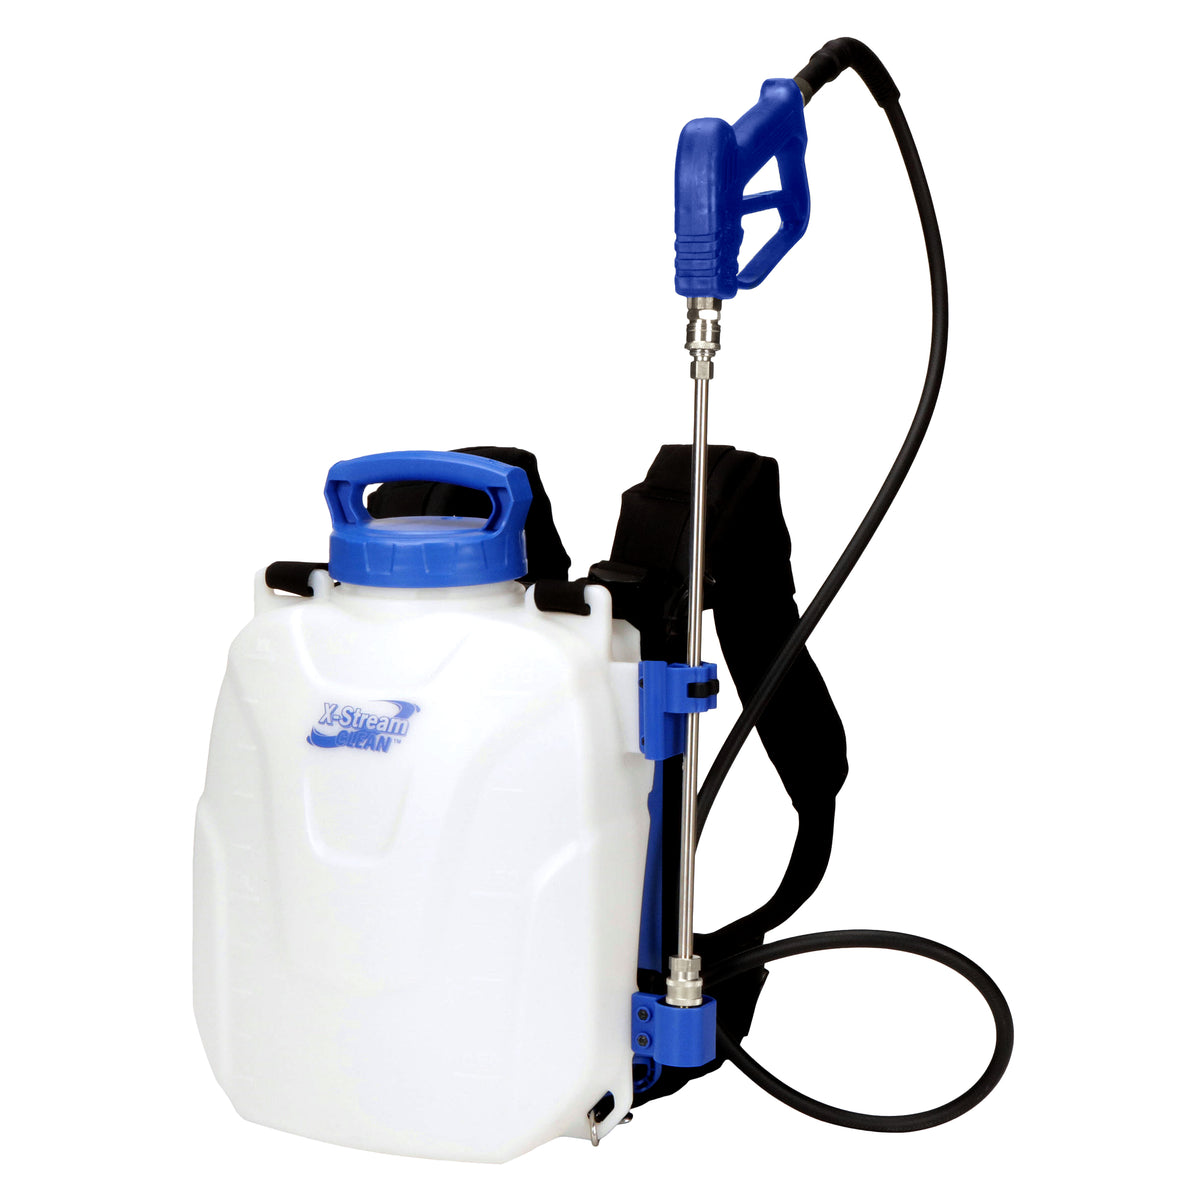 XSC microburst 2.5-g battery backpack sprayer